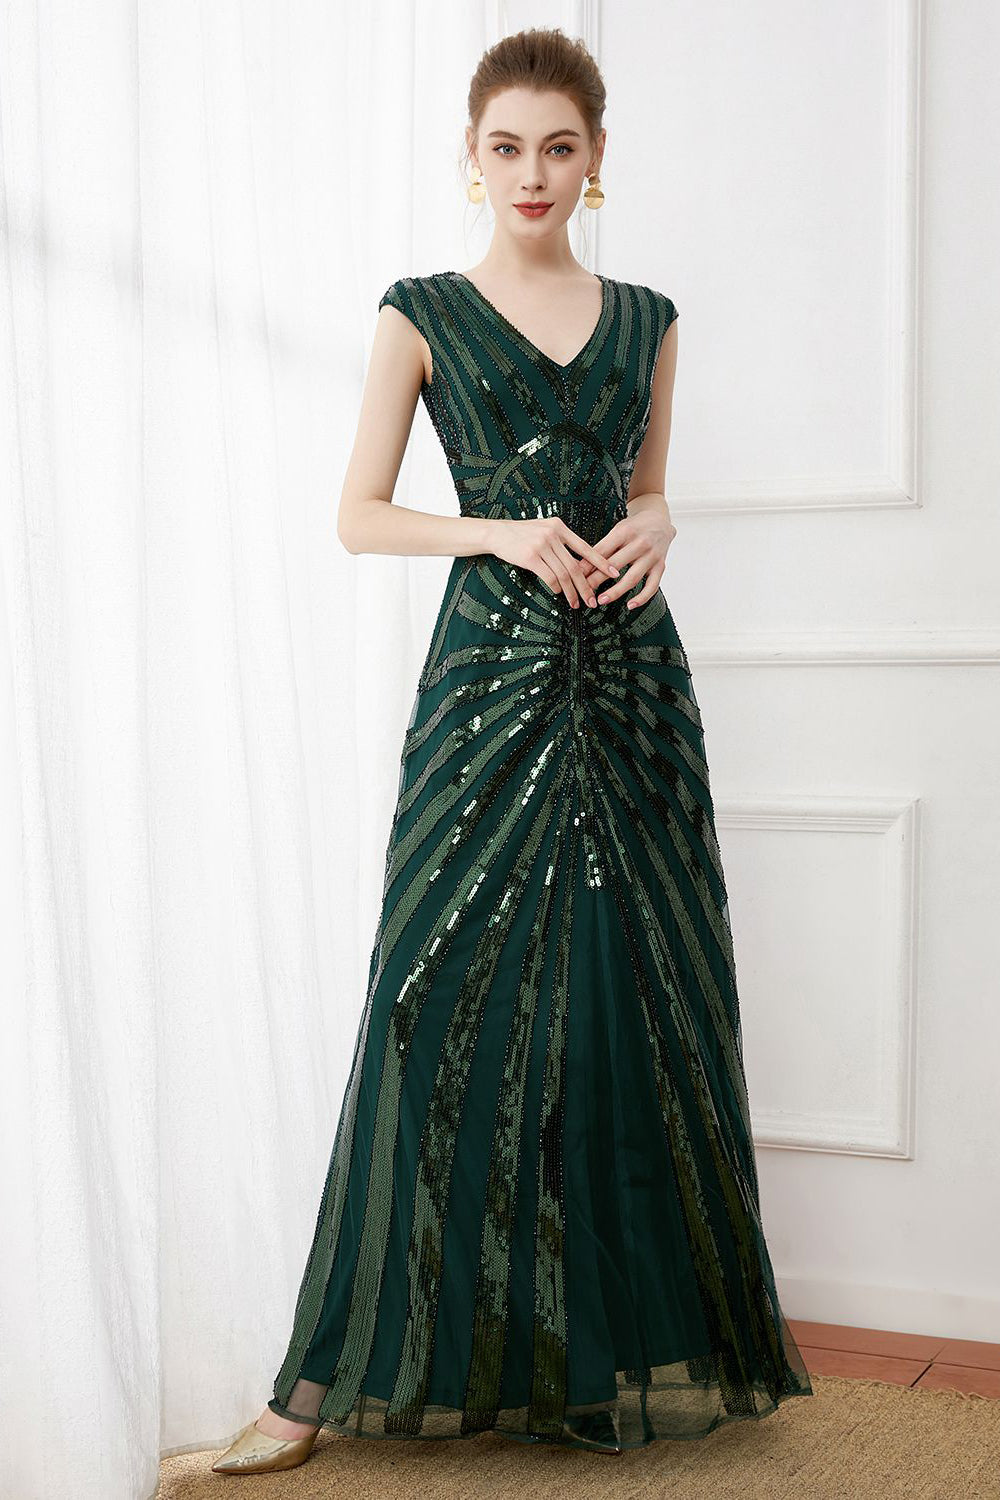 Dunkelgrünes Pailletten Langes Kleid aus den 1920er Jahren mit Perlen